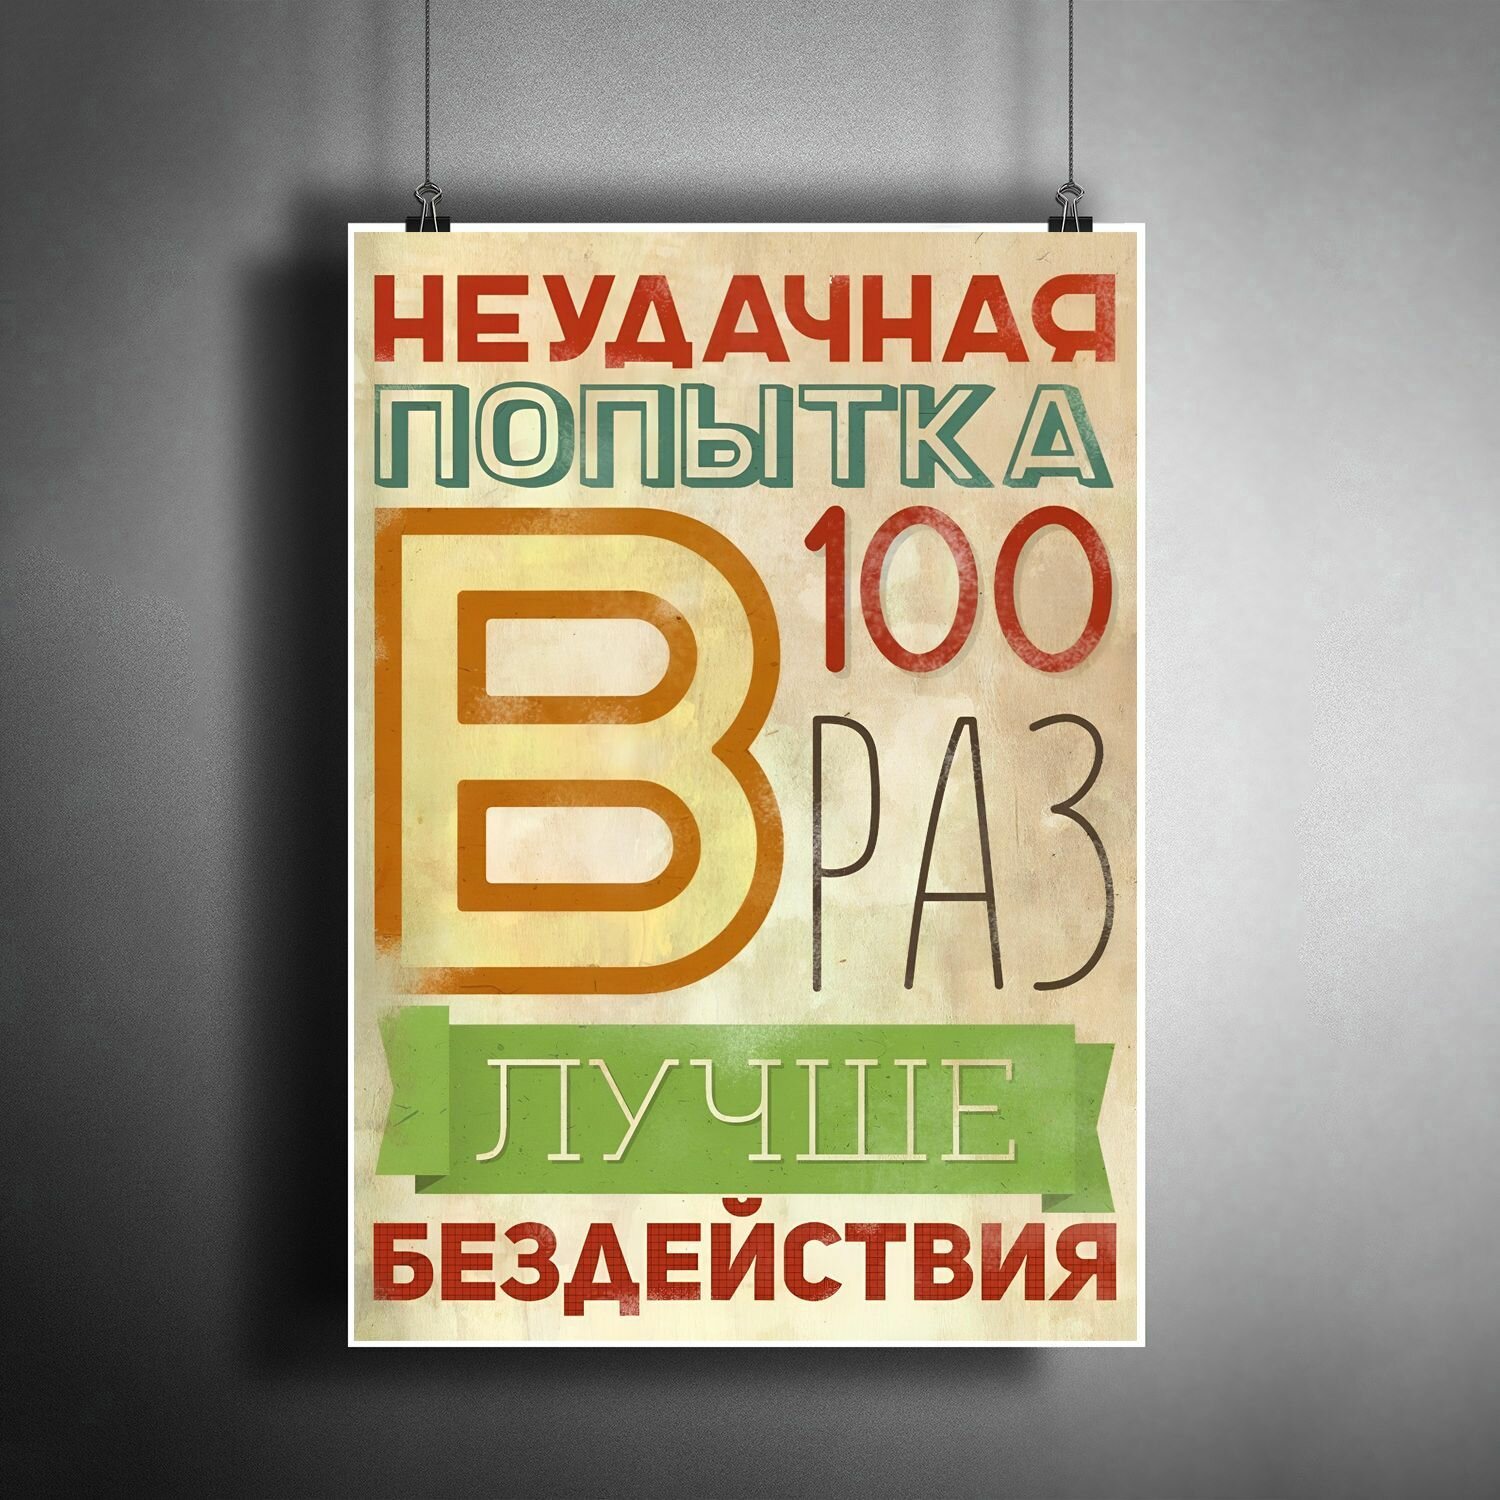 Постер плакат для интерьера "Неудачная попытка в 100 раз лучше бездействия" / Мотивация для кабинета в офис A3 (297 x 420 мм)